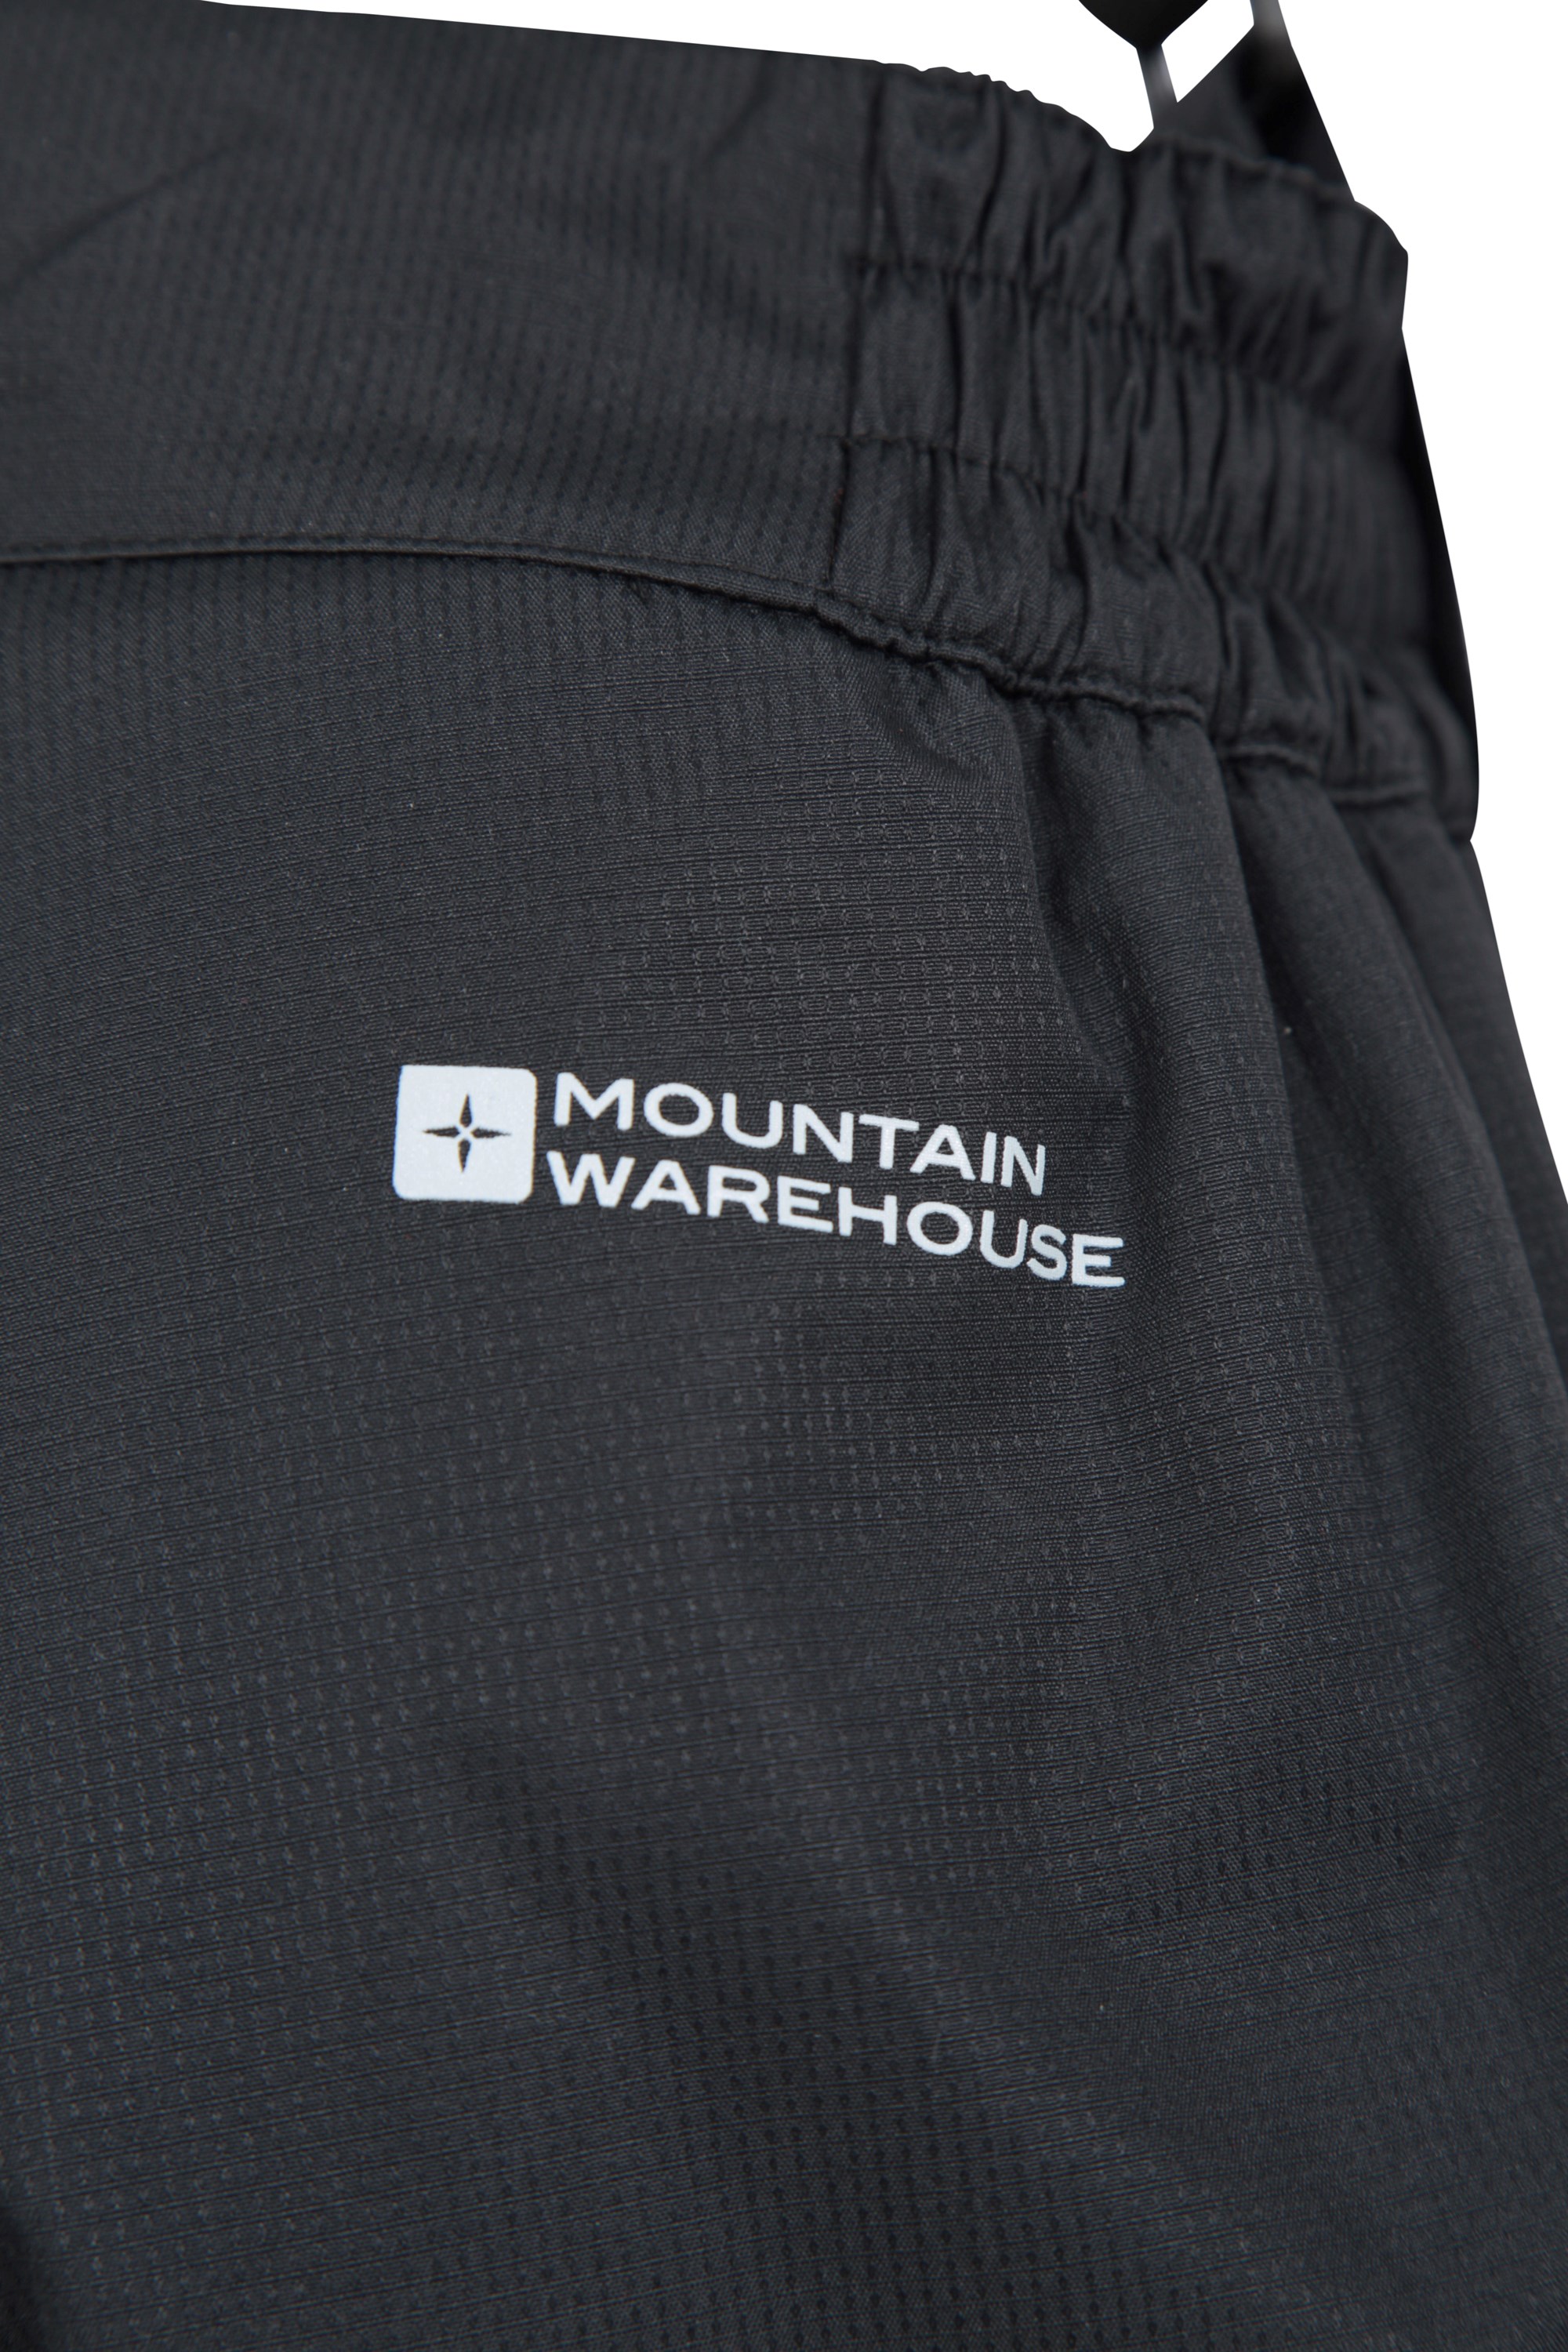 Mountain Warehouse Falcon Extreme Kids Ski Pants